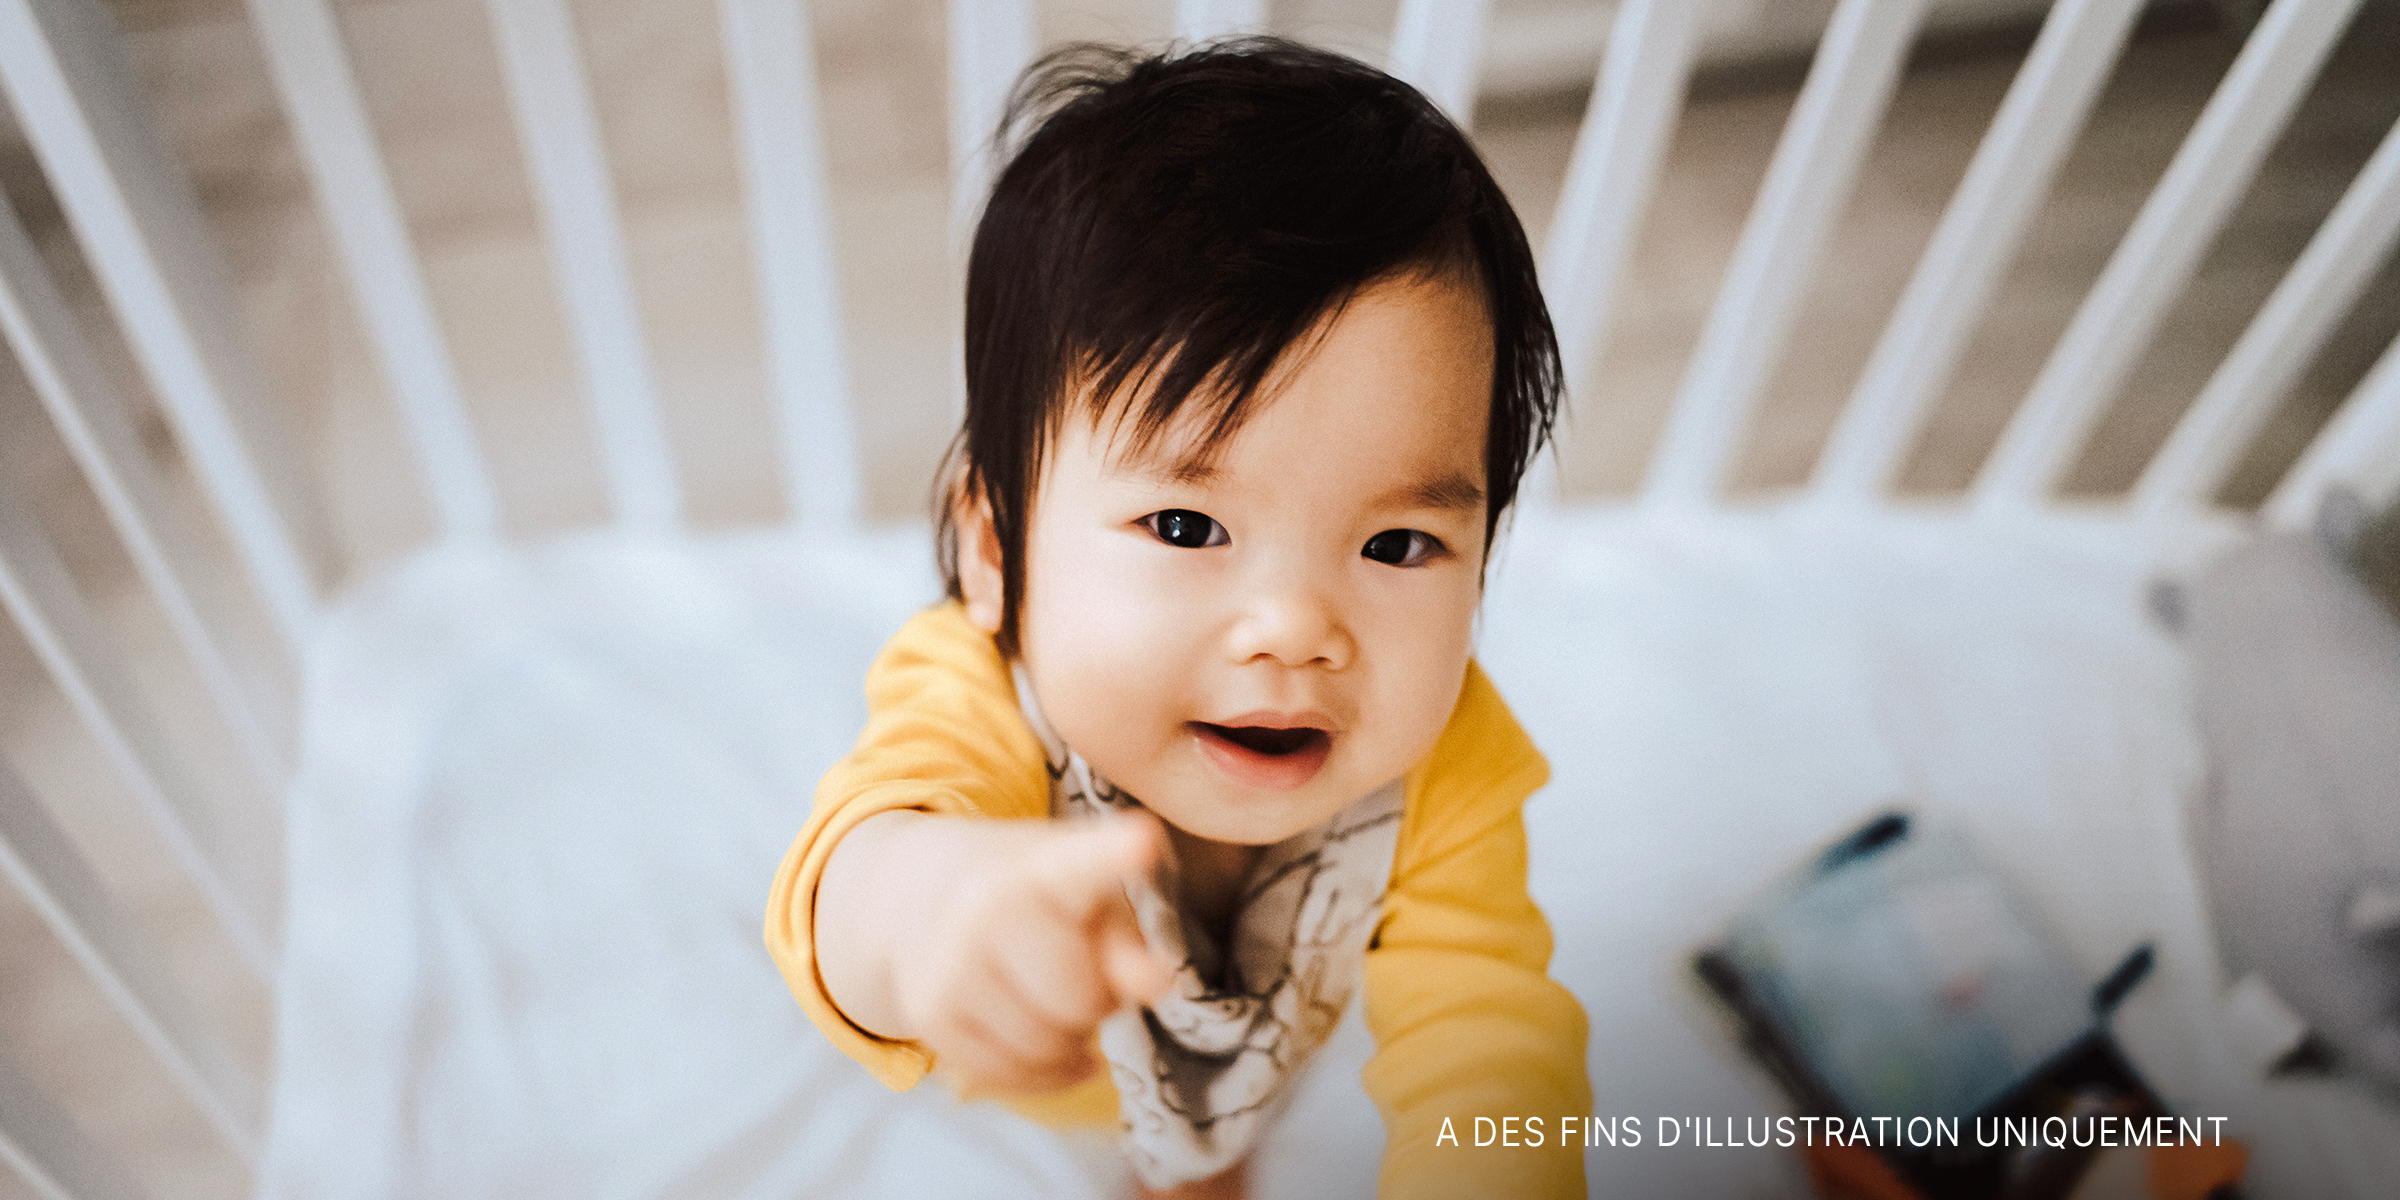 Un bébé asiatique qui regarde l'appareil photo | Source : Getty Images